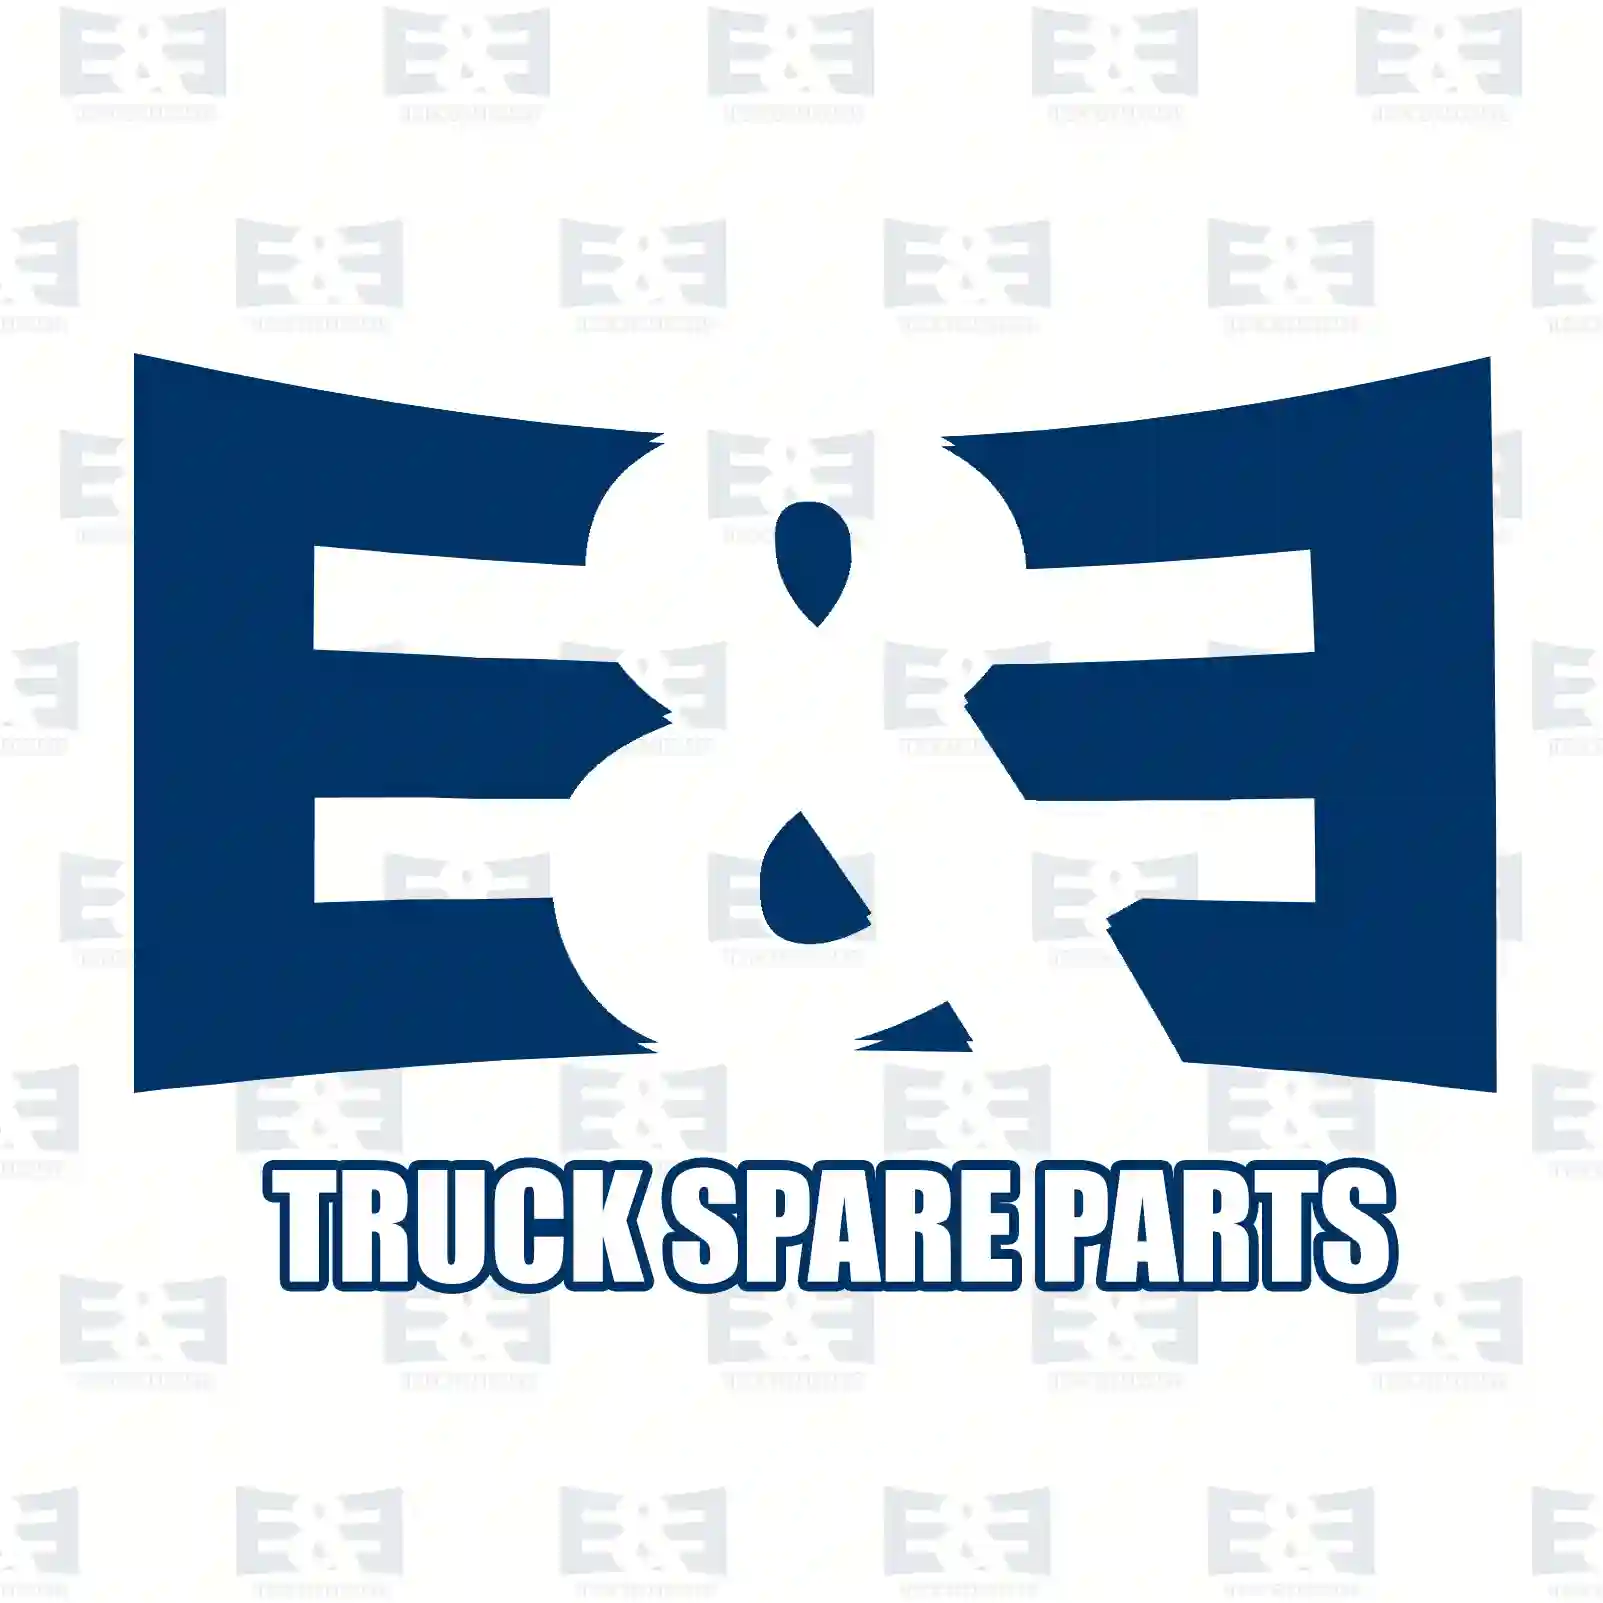 Tension roller, 2E2203510, 0020747516, 7420503093, 7420747516, 7421574656, 7421753149, 15160170, 20503093, 20747516, 21574656, 21676635, 21753149, 3827501, ZG02147-0008 ||  2E2203510 E&E Truck Spare Parts | Truck Spare Parts, Auotomotive Spare Parts Tension roller, 2E2203510, 0020747516, 7420503093, 7420747516, 7421574656, 7421753149, 15160170, 20503093, 20747516, 21574656, 21676635, 21753149, 3827501, ZG02147-0008 ||  2E2203510 E&E Truck Spare Parts | Truck Spare Parts, Auotomotive Spare Parts